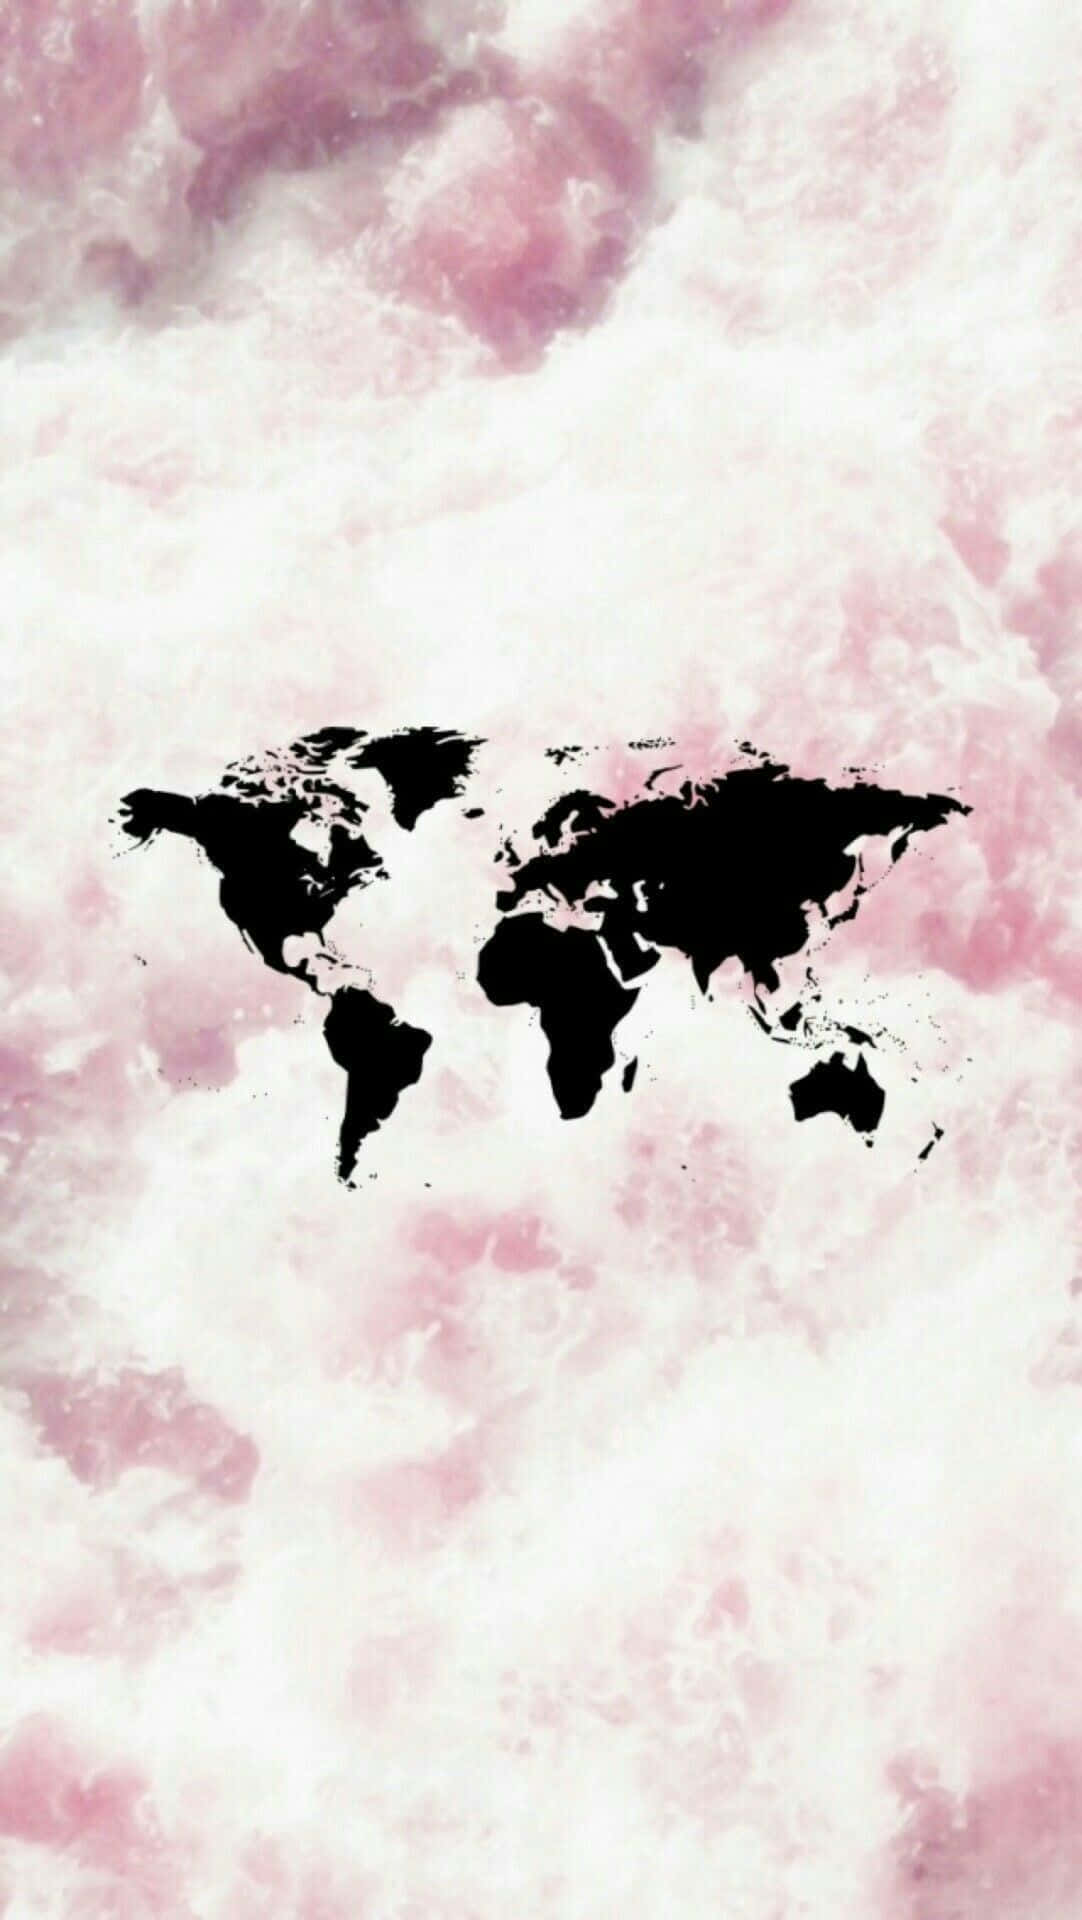 Unfondo Rosa Con Un Mapa Mundi En Negro Fondo de pantalla